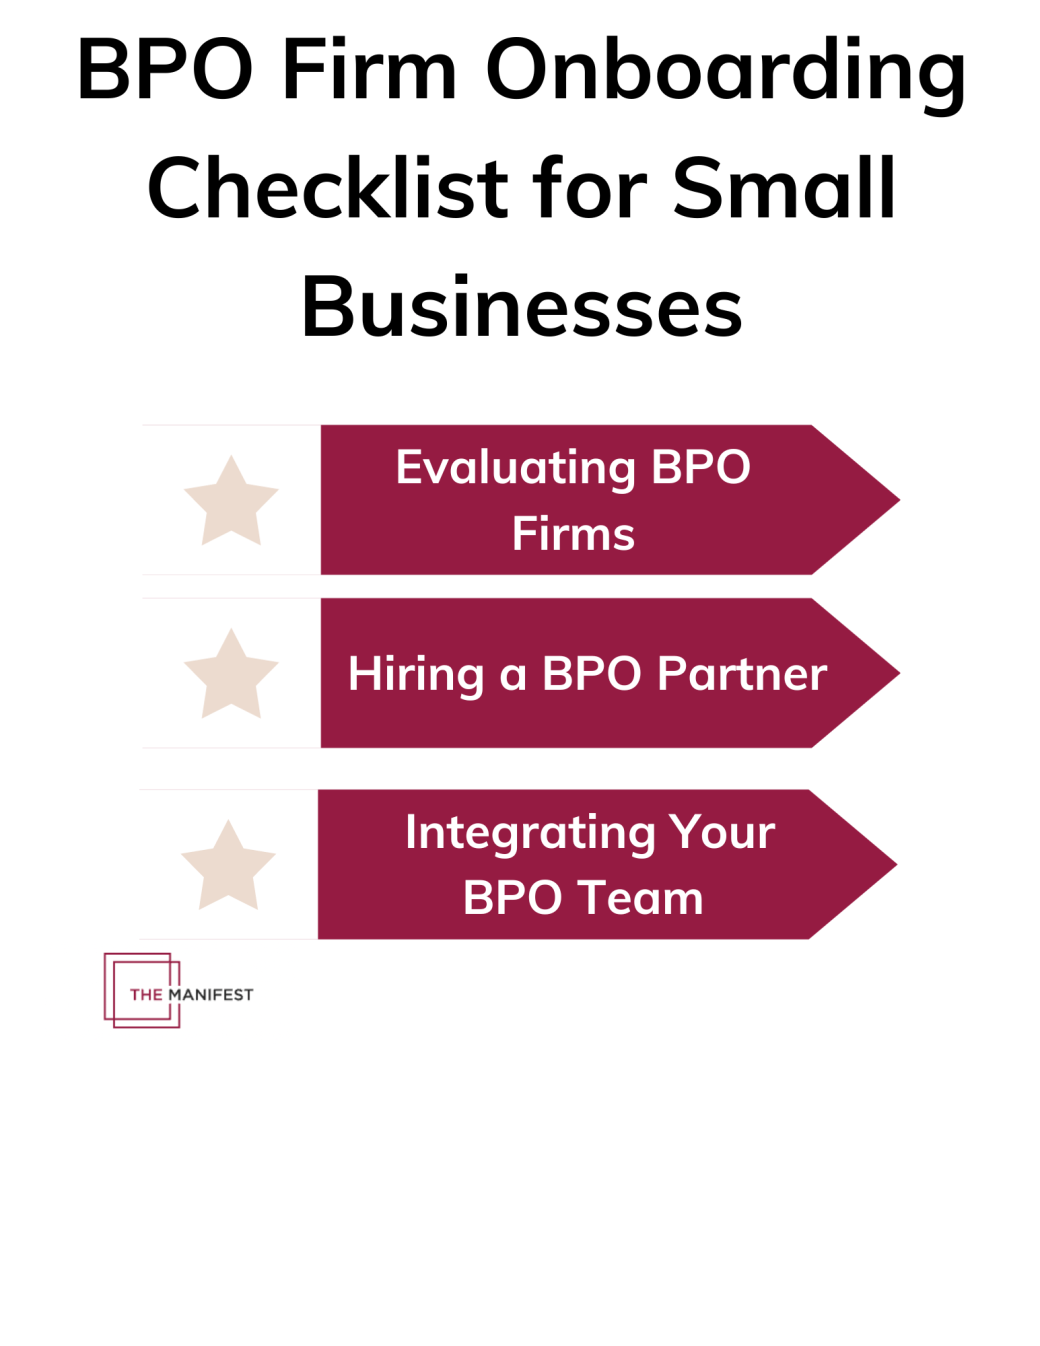 中小企業向けの BPO 企業オンボーディング チェックリスト